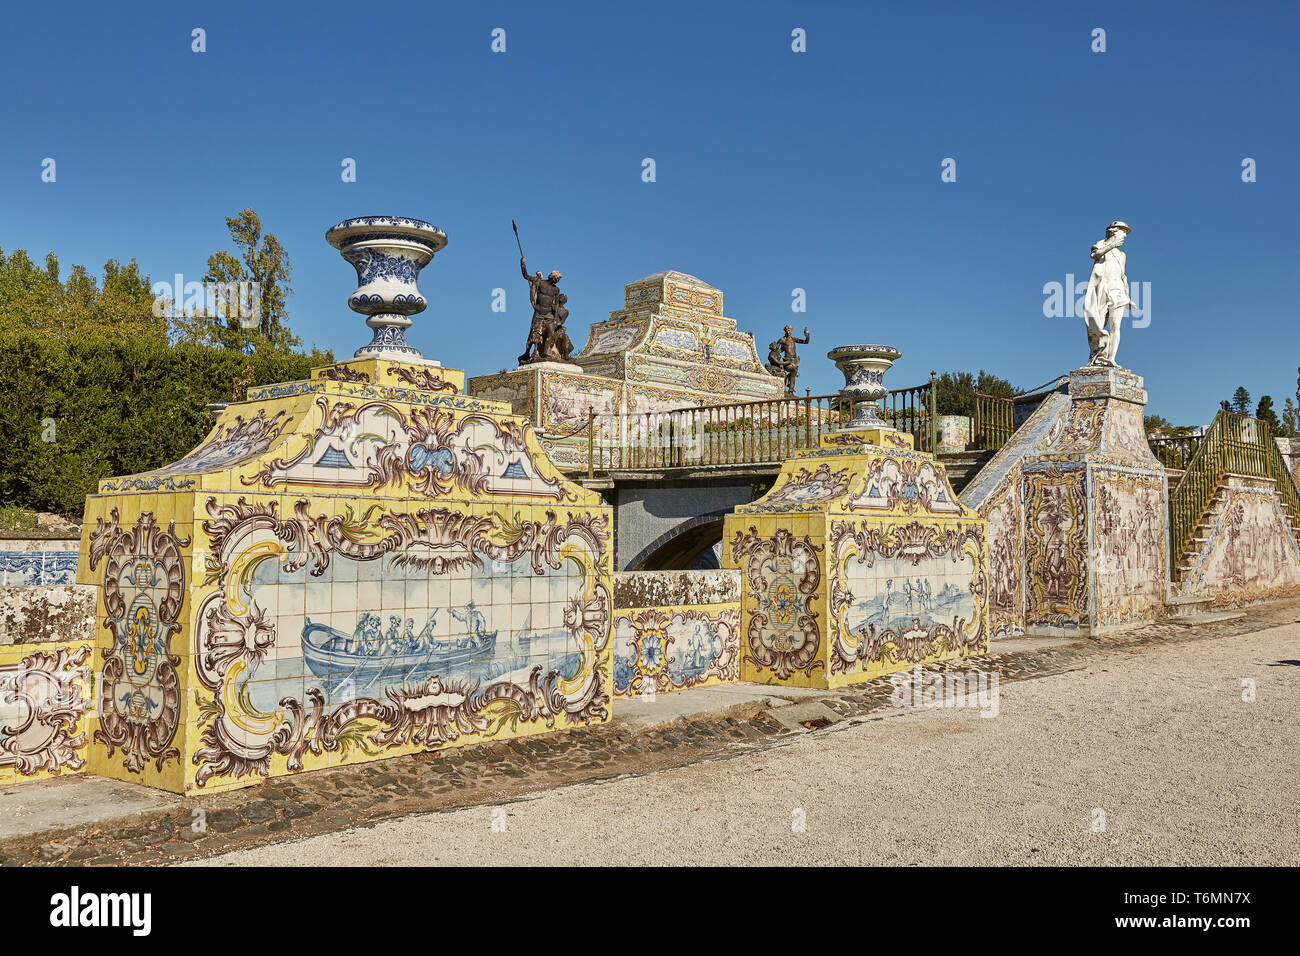 QUELUZ, Sintra/PORTUGAL - Oktober 02, 2017: Die Fliesen Chanel in Queluz National Palace. Fliesen Platten repräsentieren unterschiedliche galant Szenen wie ein Jagd Stockfoto